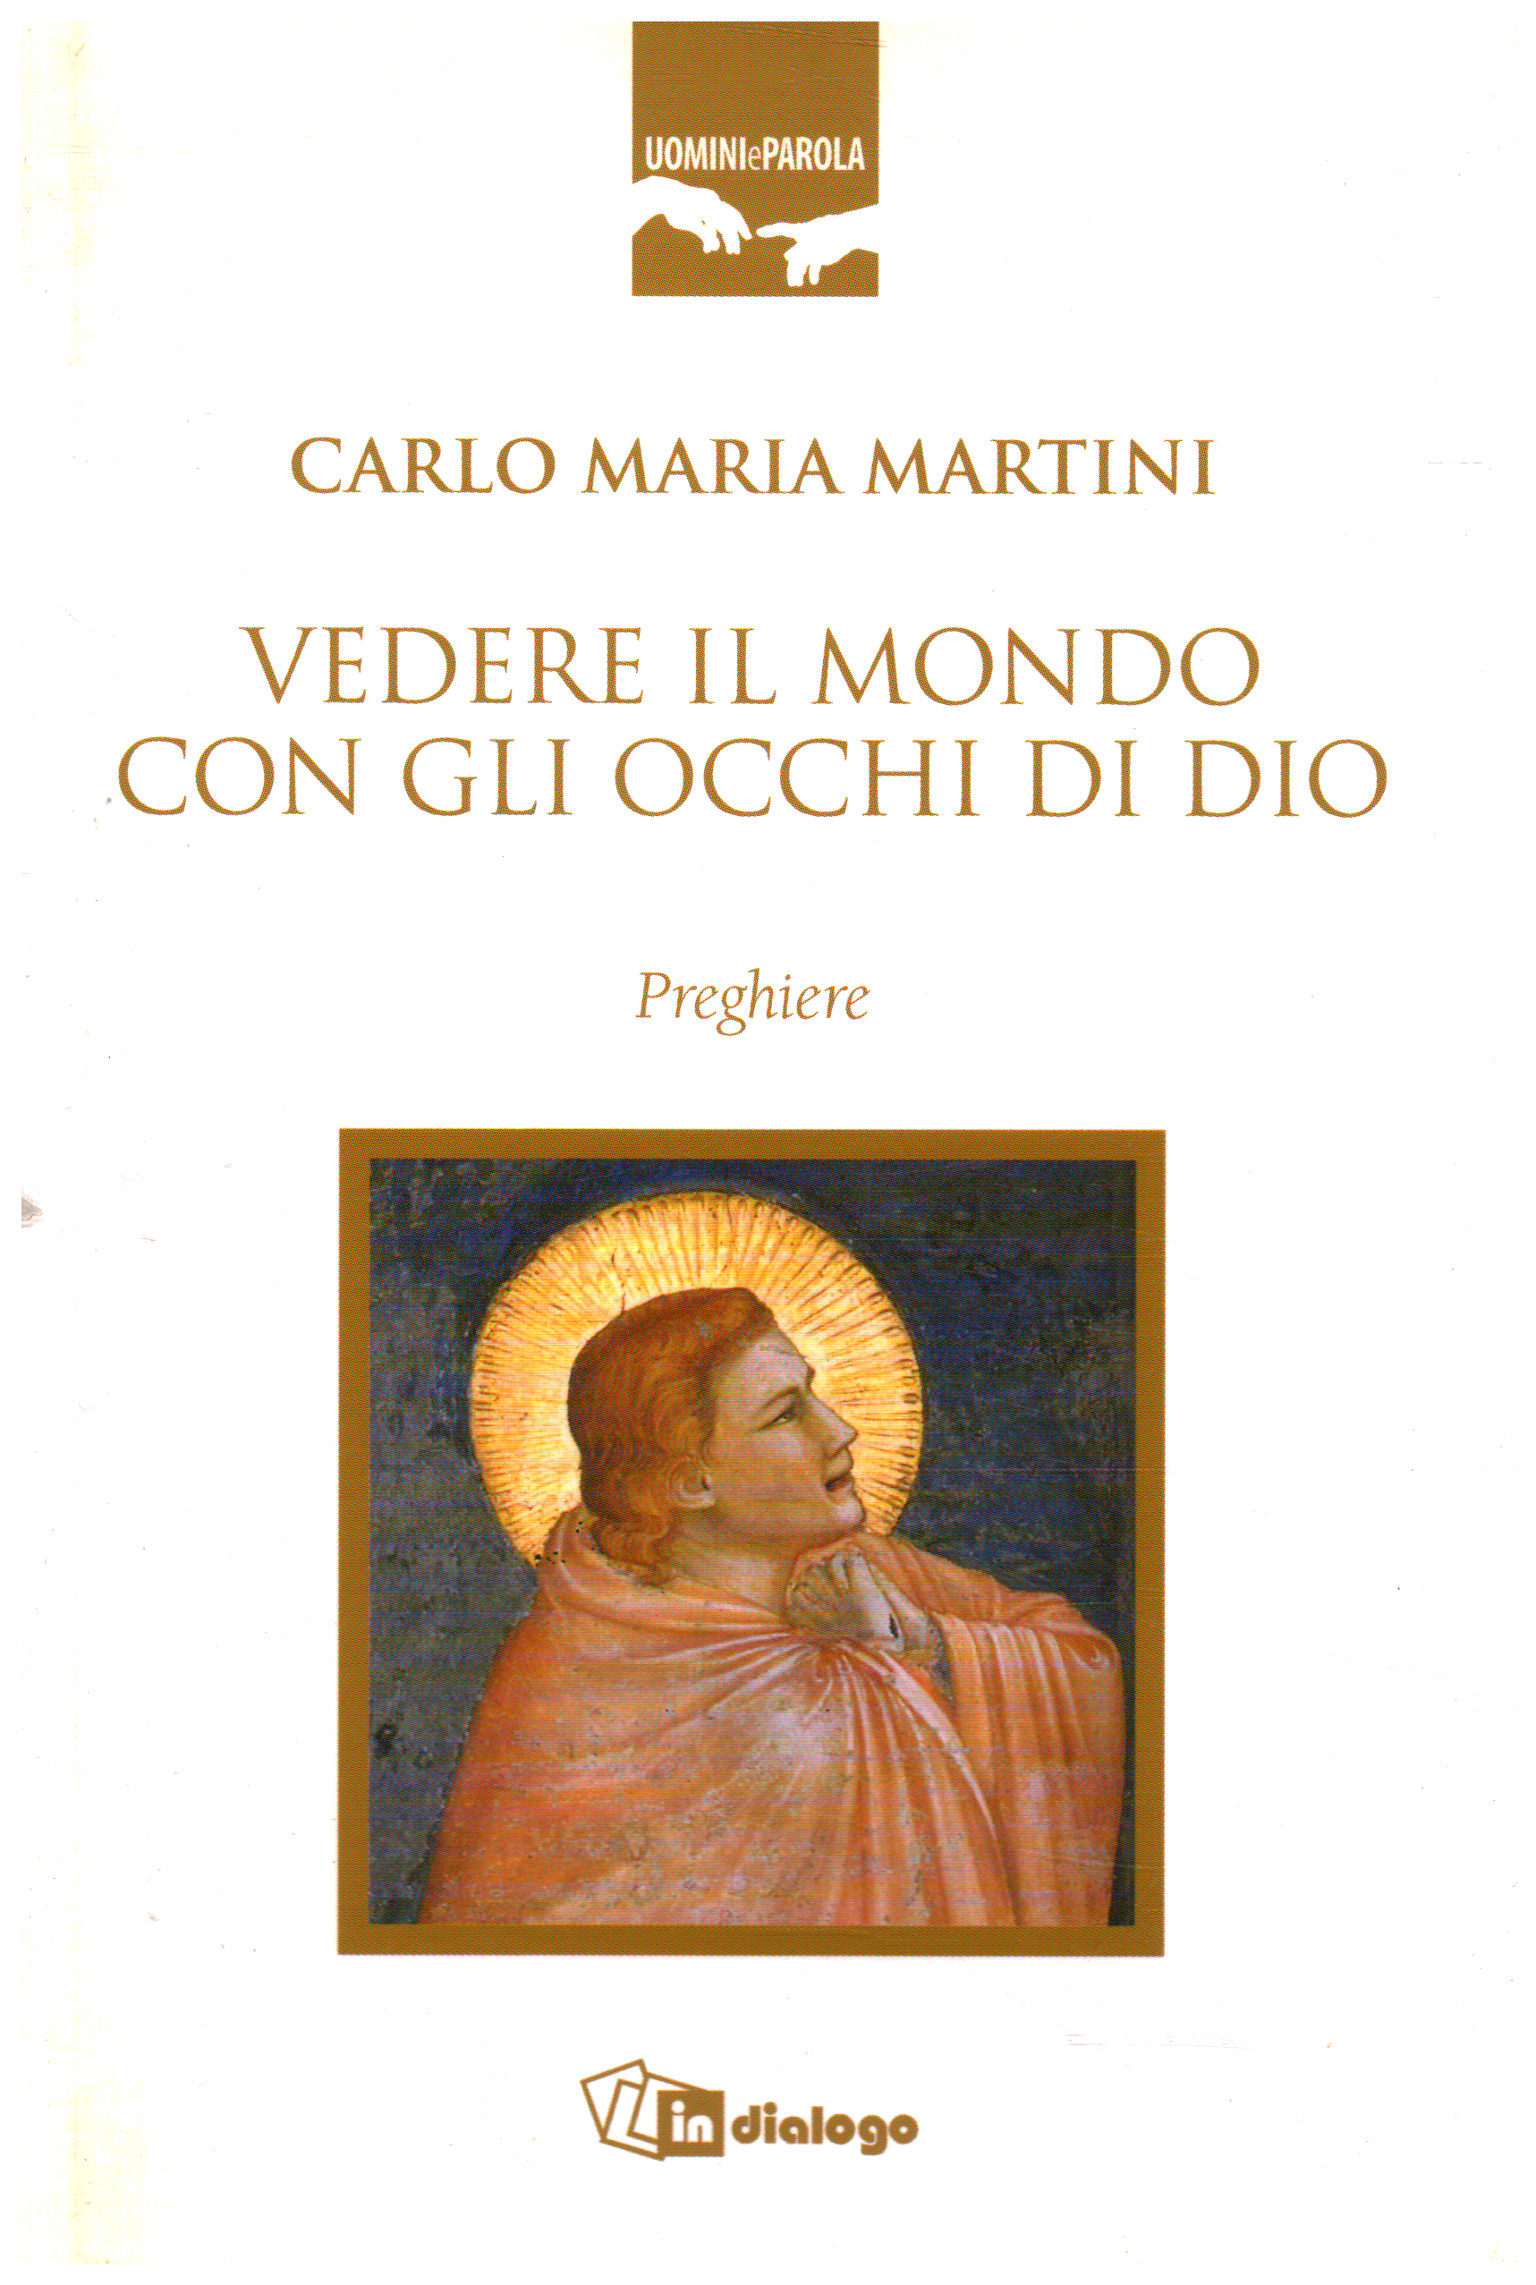 Ver el mundo con los ojos de Dios, Carlo Maria Martini